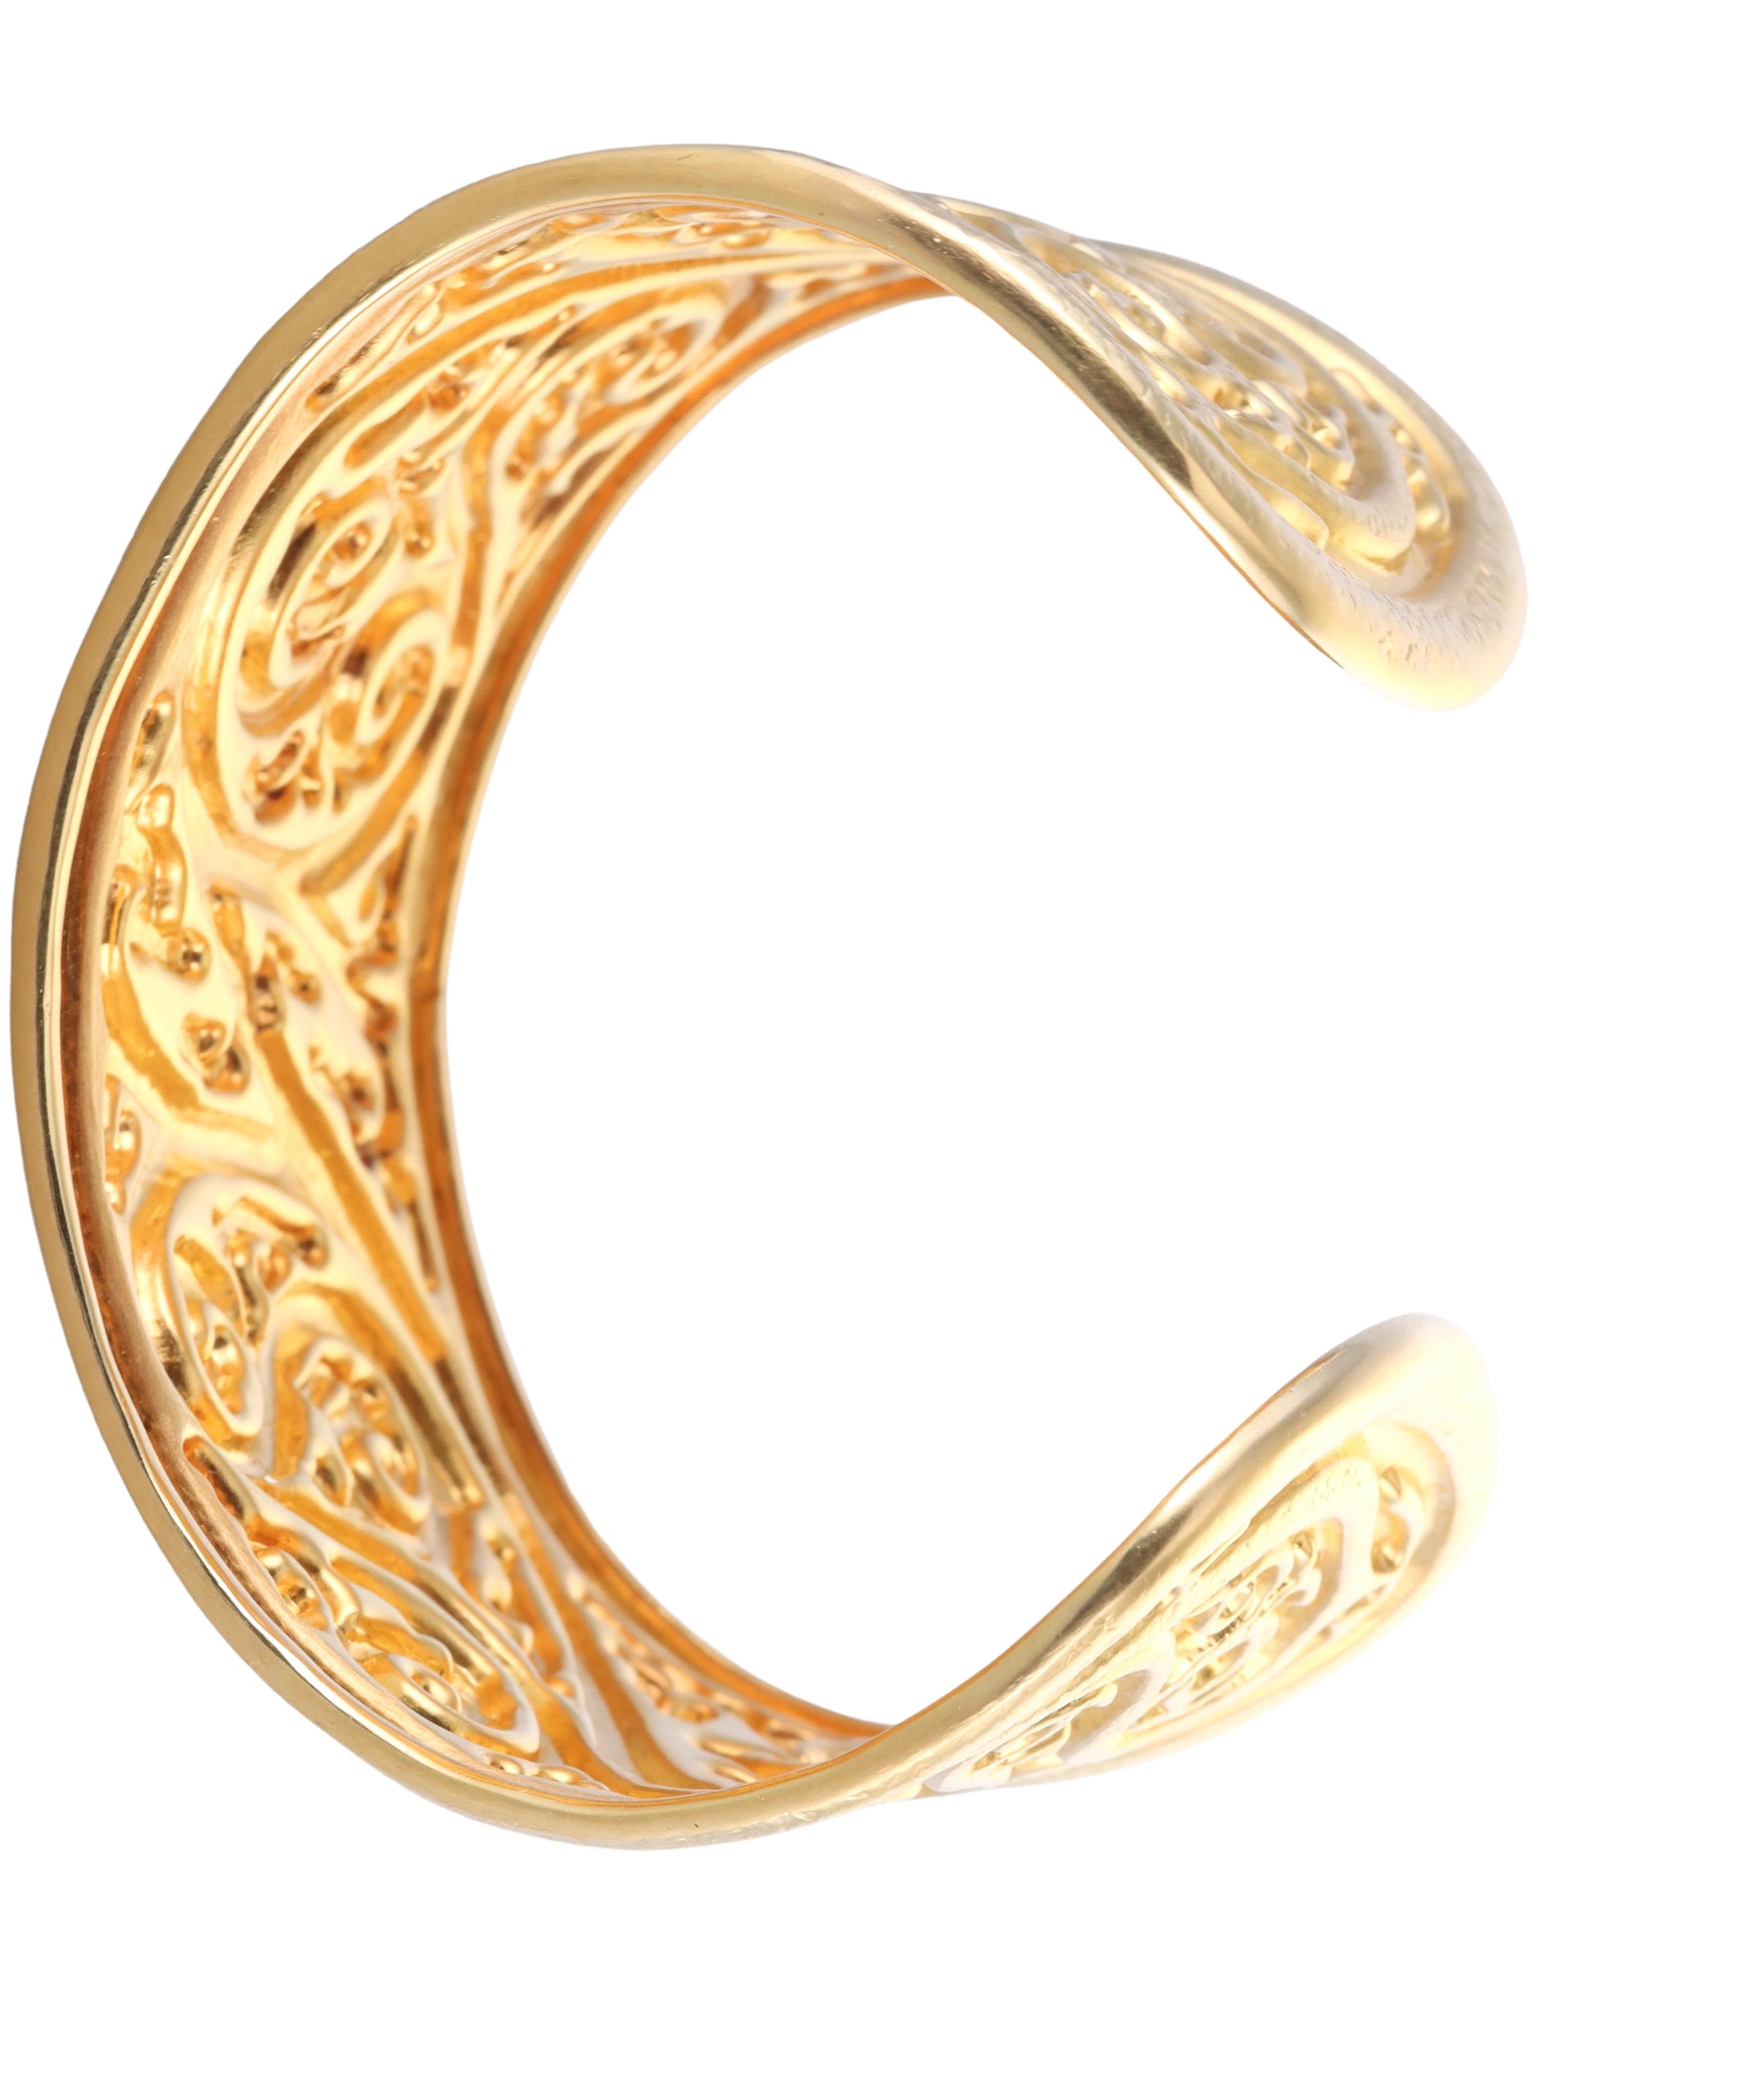 Magnifique bracelet manchette en or jaune 18 carats, réalisé par l'emblématique designer grec Ilias Lalaounis. Le bracelet convient à un poignet d'environ 7,5-7,75